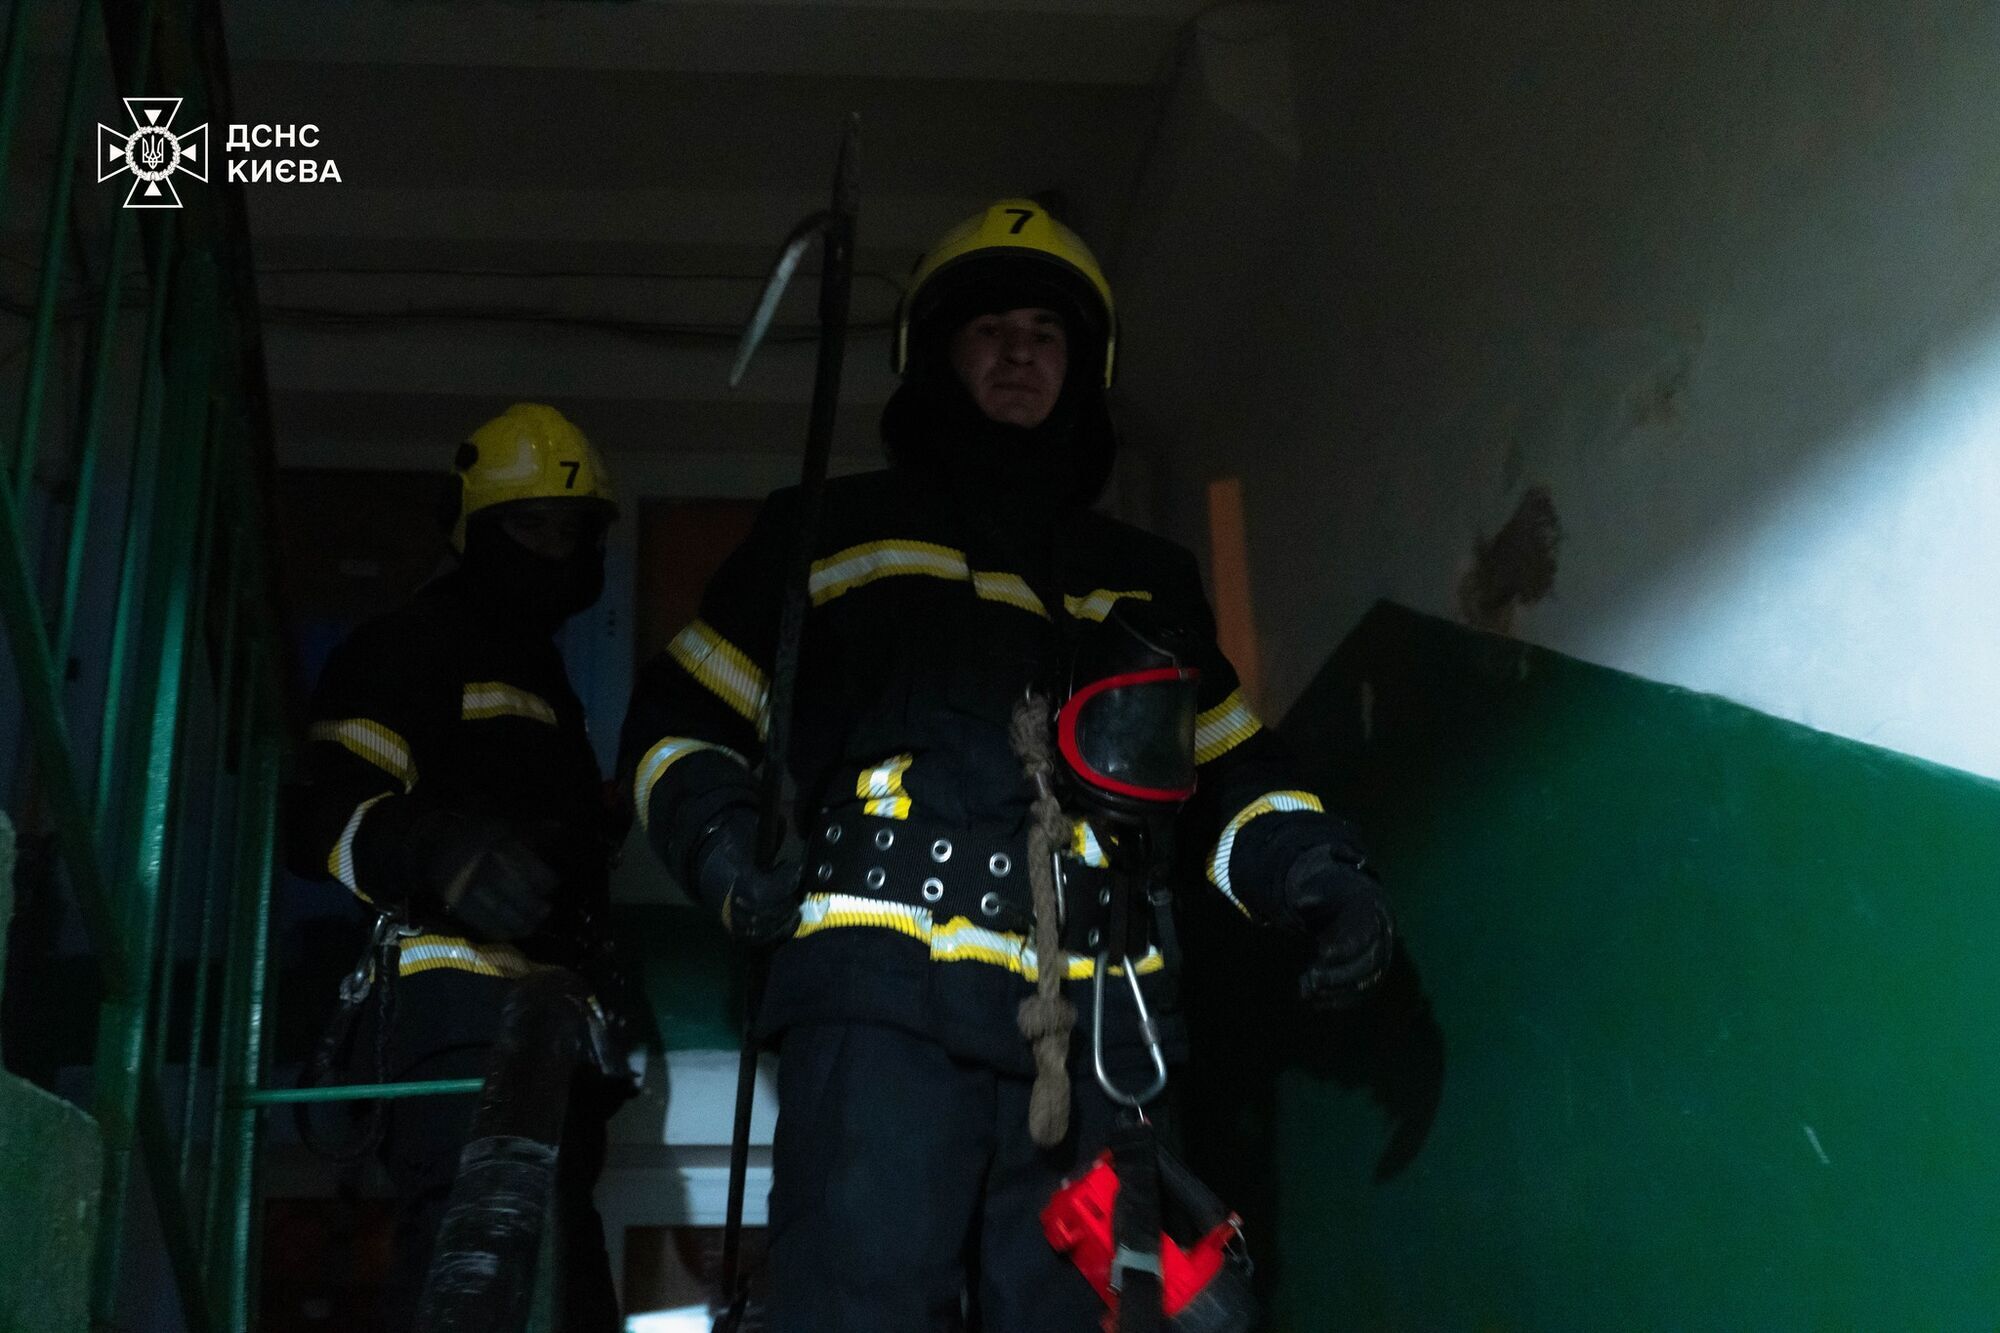 В Киеве при пожаре в квартире спасатели обнаружили тела двух человек: подробности трагедии. Фото